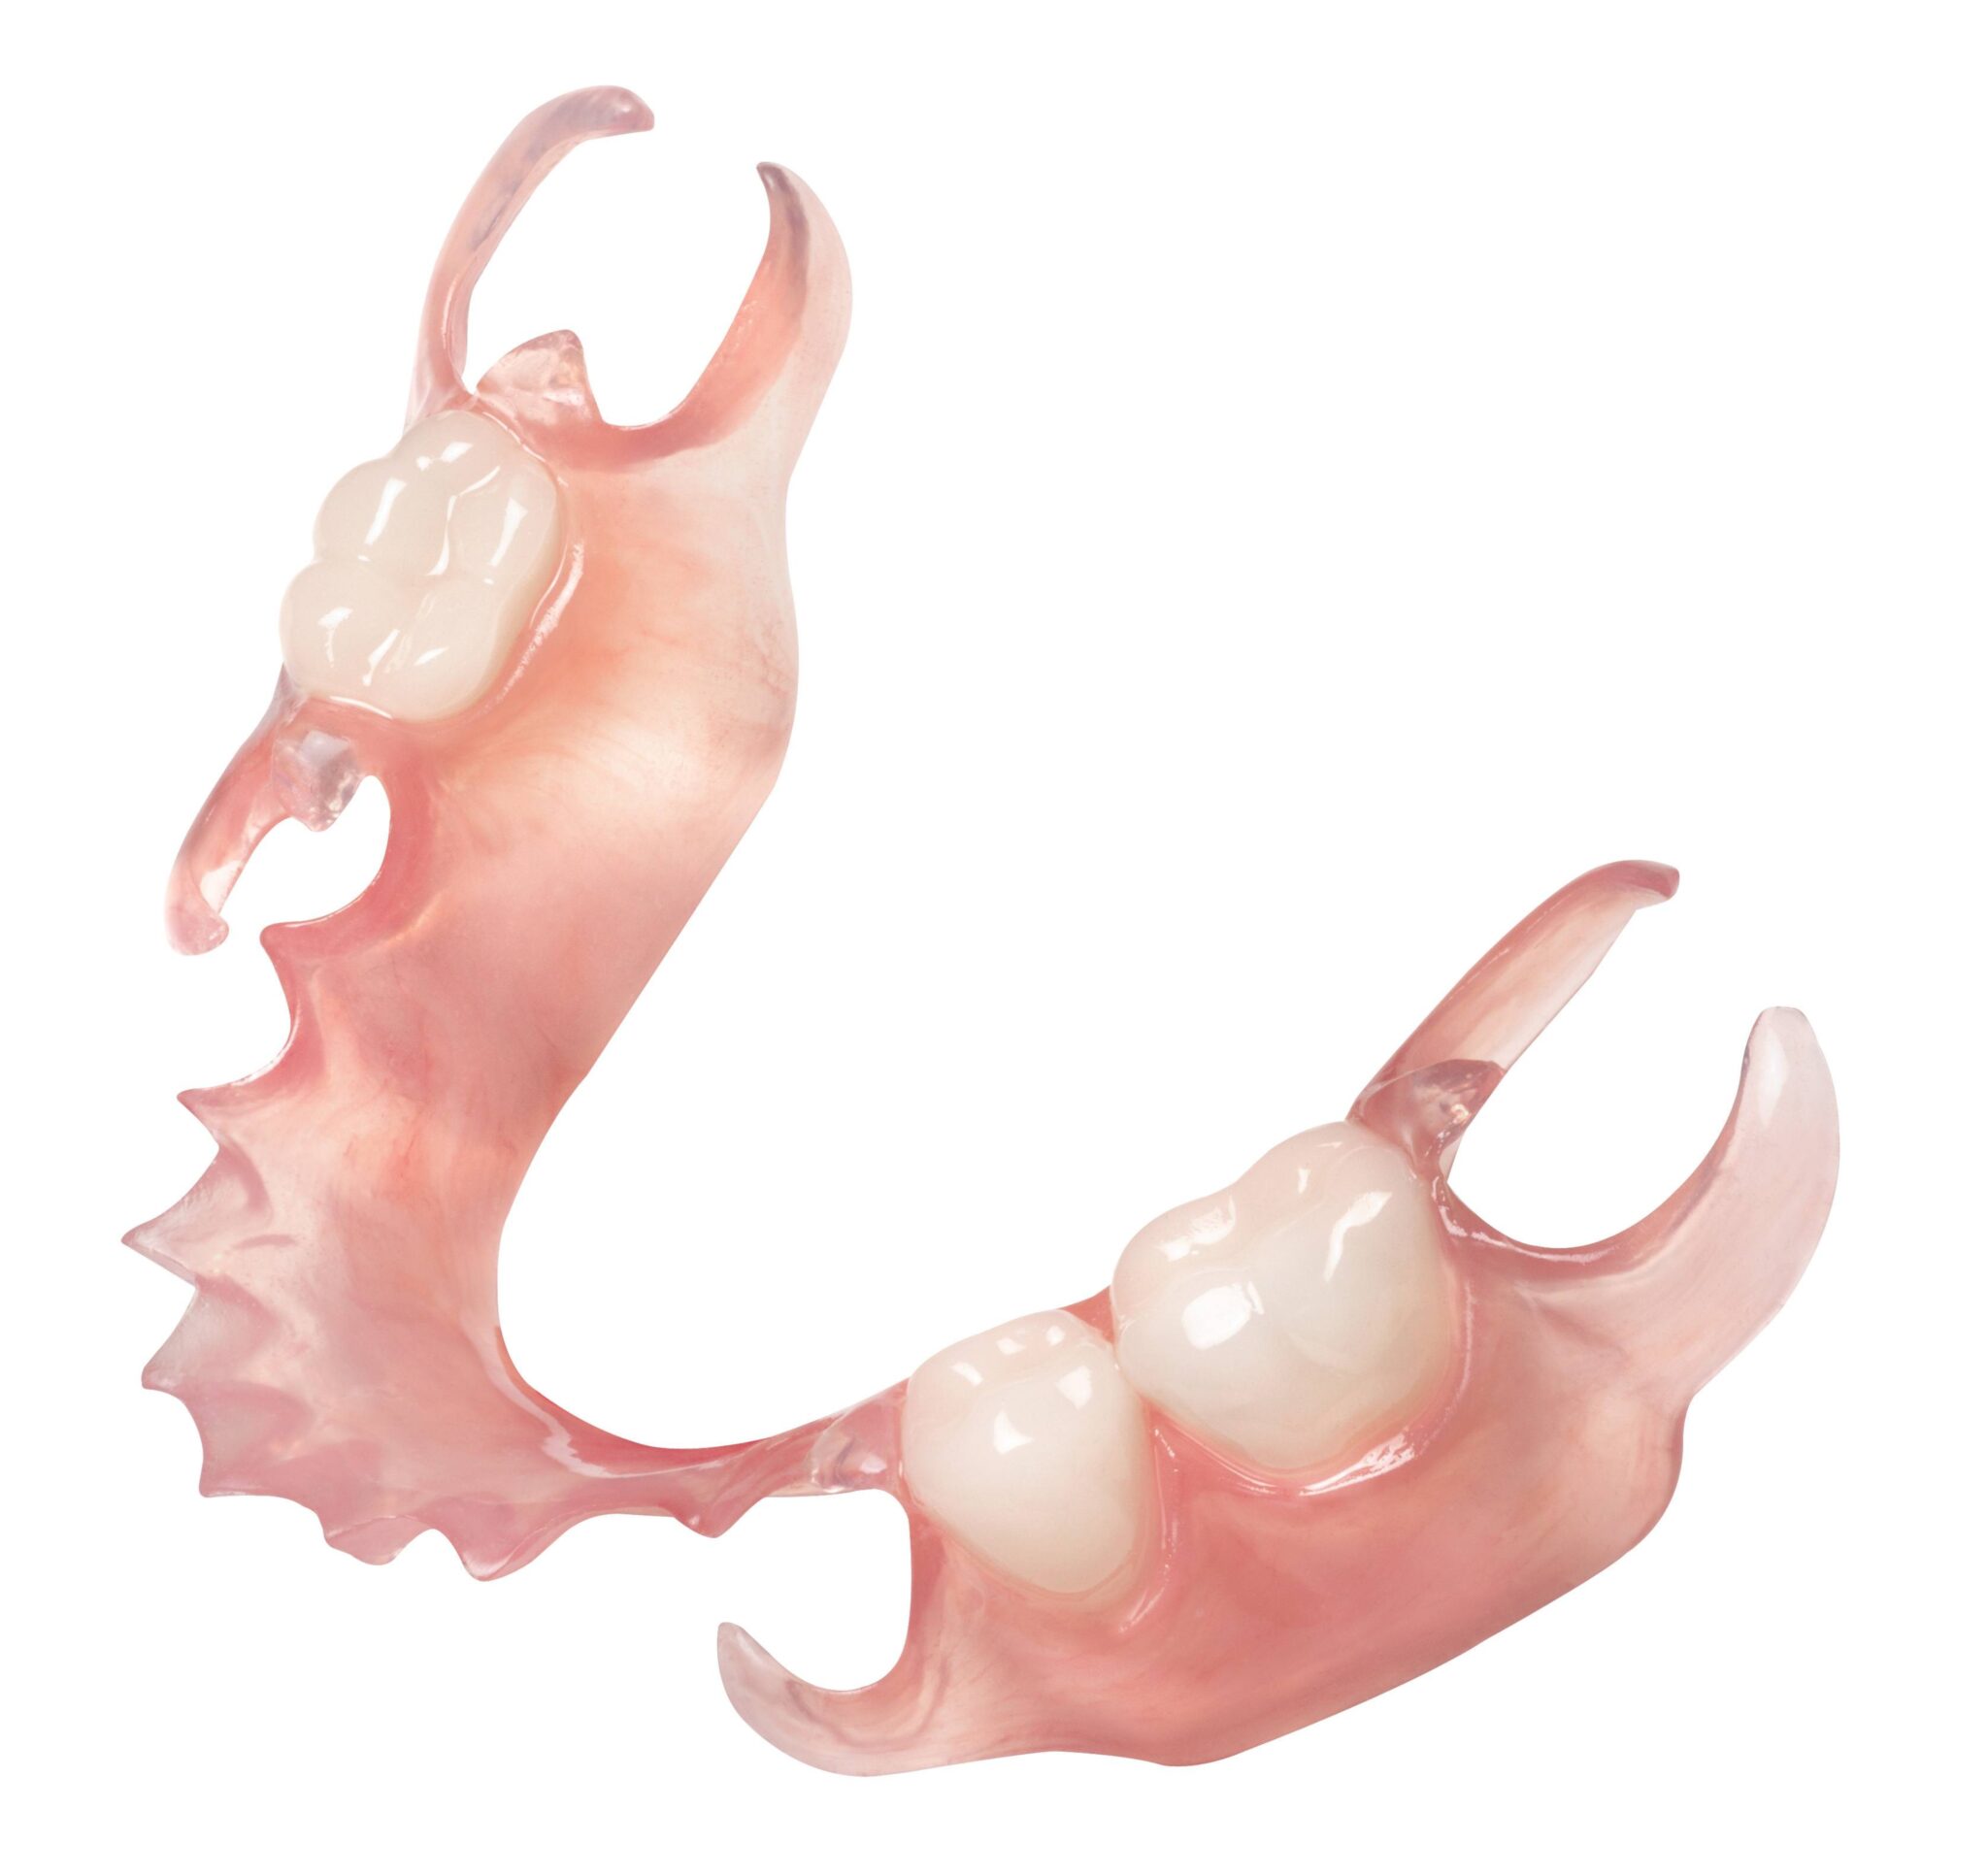 Протезирование зубов в казани. Съемный пластинчатый протез (1 пластина). Частичный съемный пластиночный протез на нижнюю челюсть. Пластиночный частичносъмный протез. Зубной протез съёмный пластиночный протез.